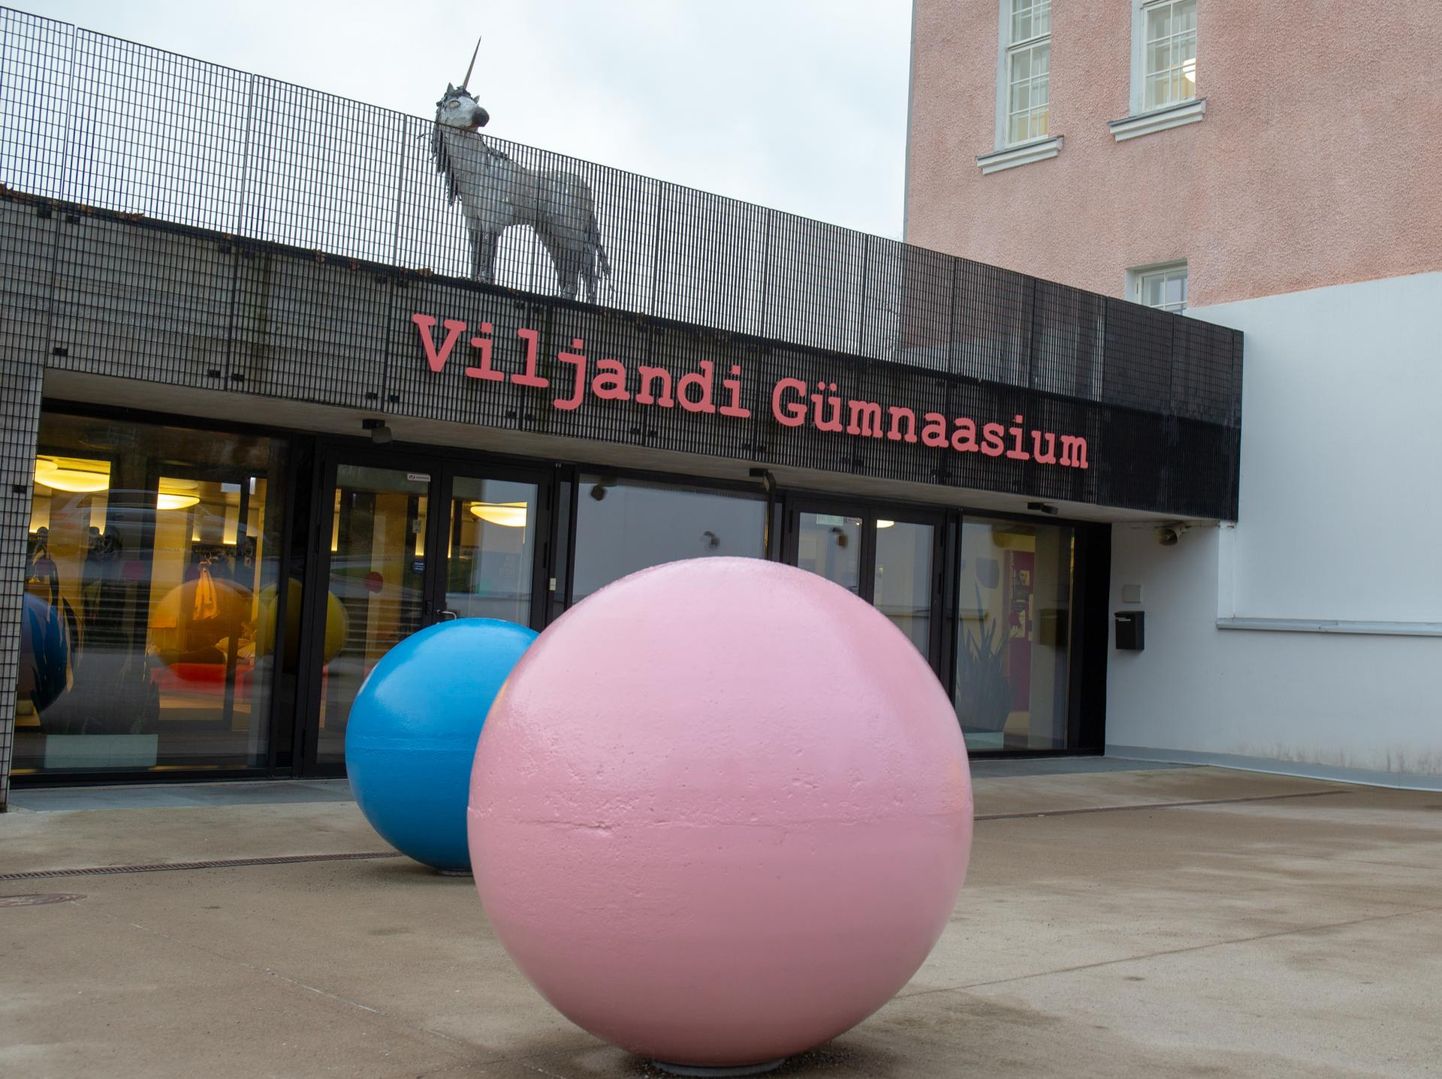 Laupäeval teatas Viljandi gümnaasium sotsiaalmeedia vahendusel, et üks sealsetest õpilastest on andnud positiivse koroonaproovi.